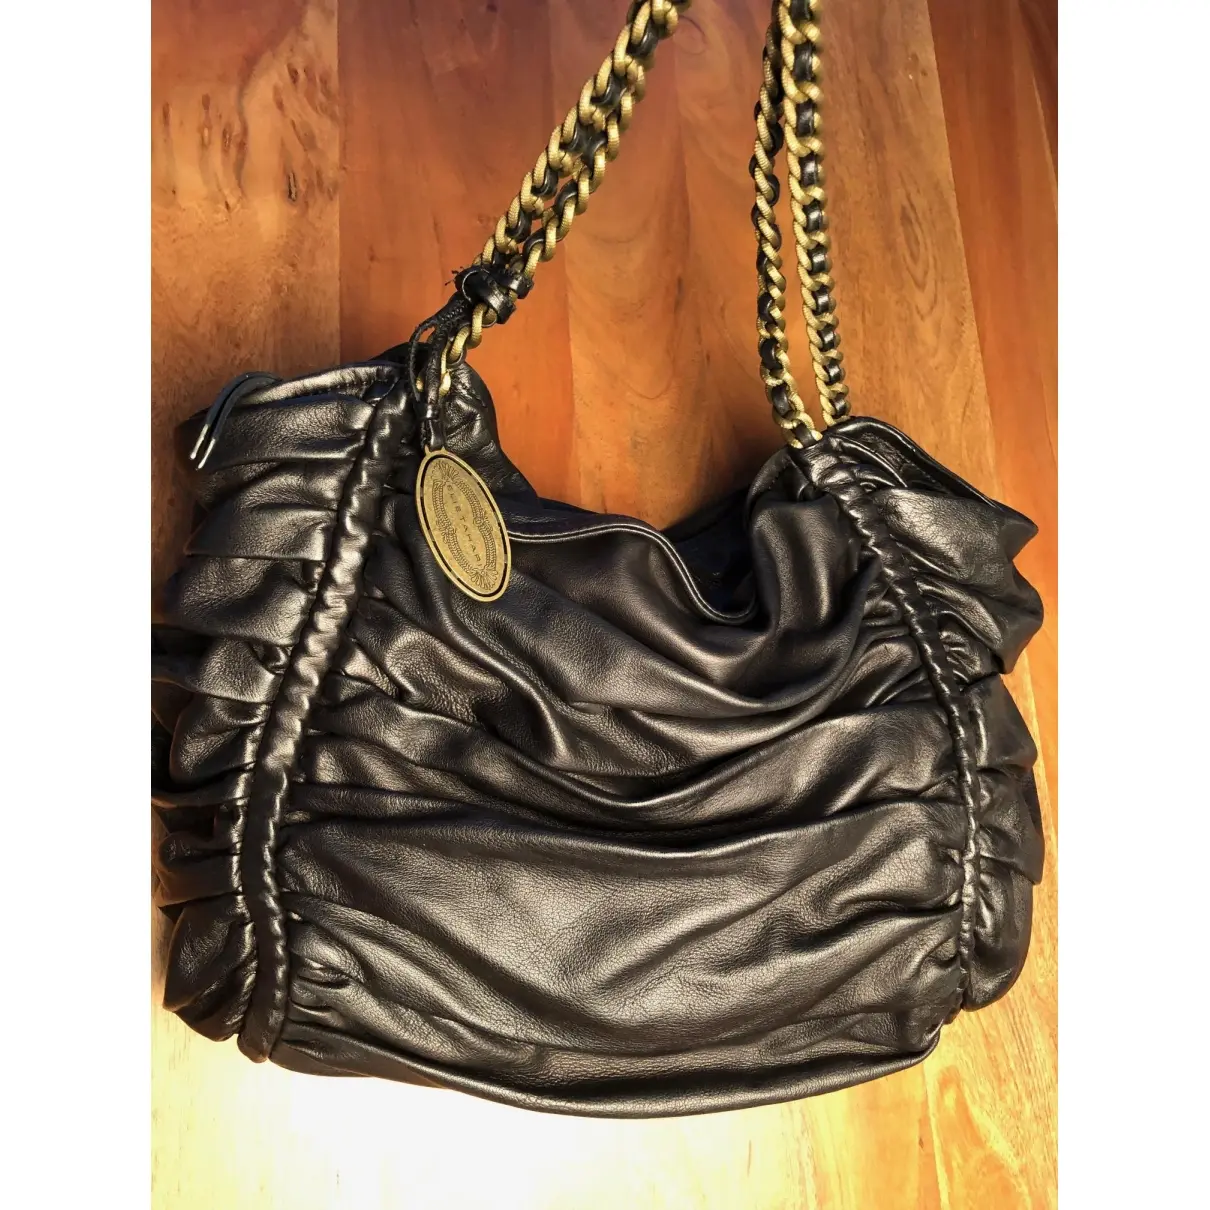 Leather handbag Elie Tahari - Vintage